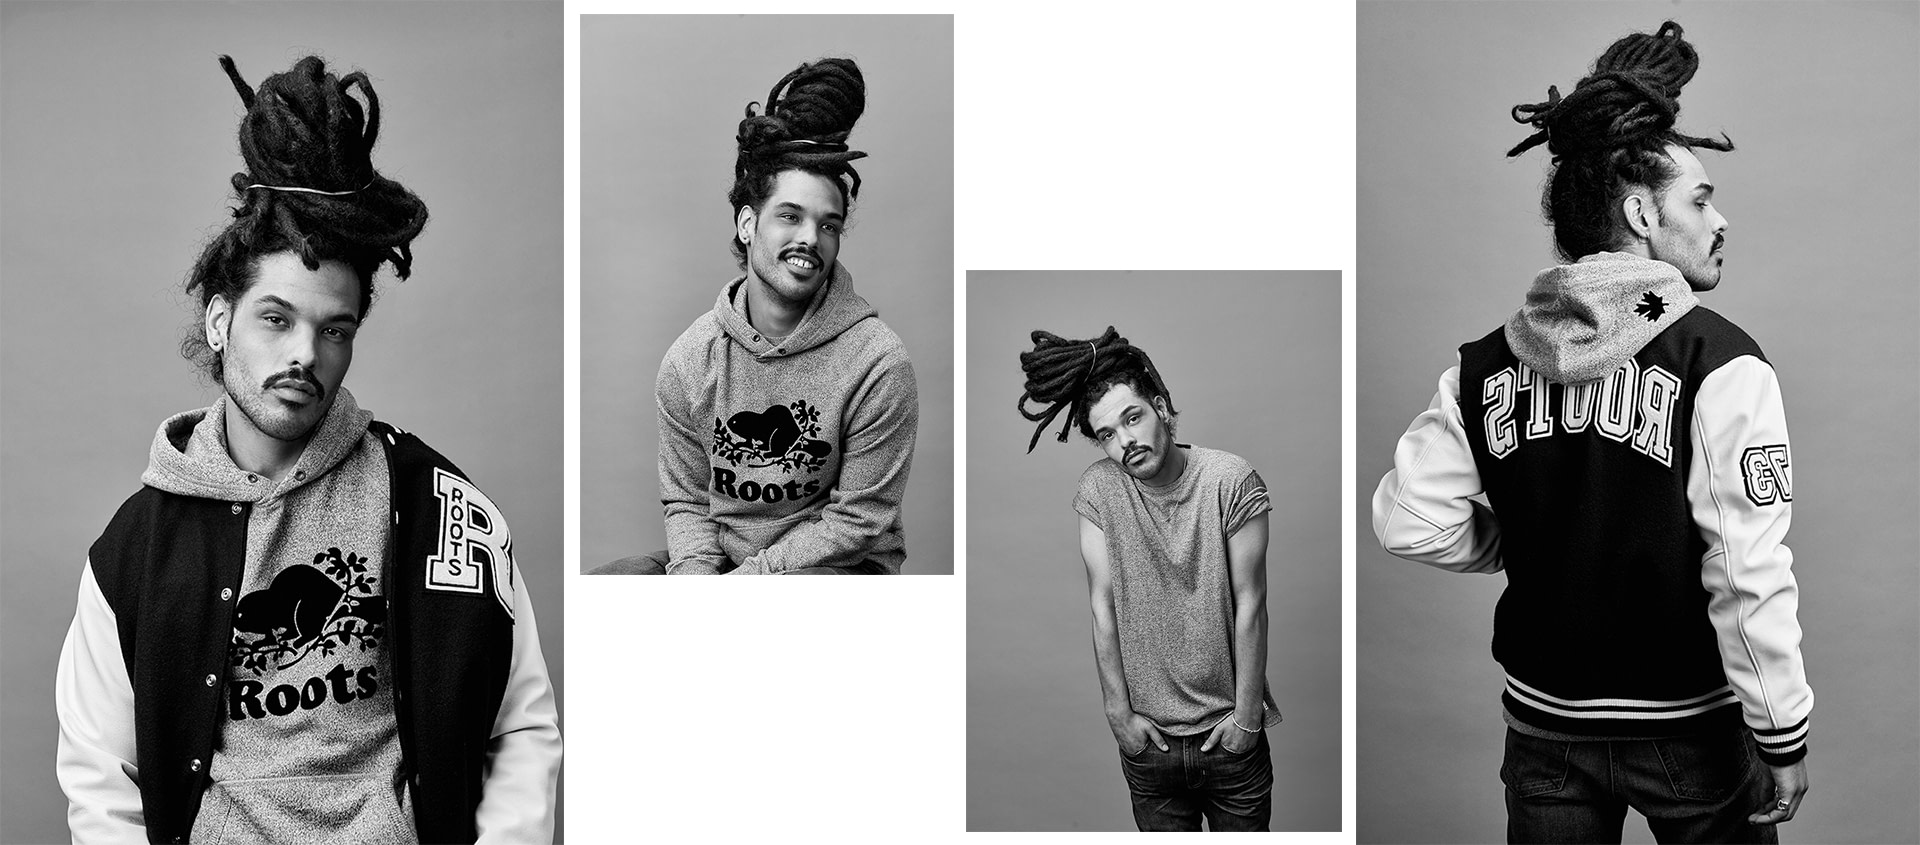 La campagne New Roots met en vedette Silvano pour ses portraits « Salt & Pepper ».